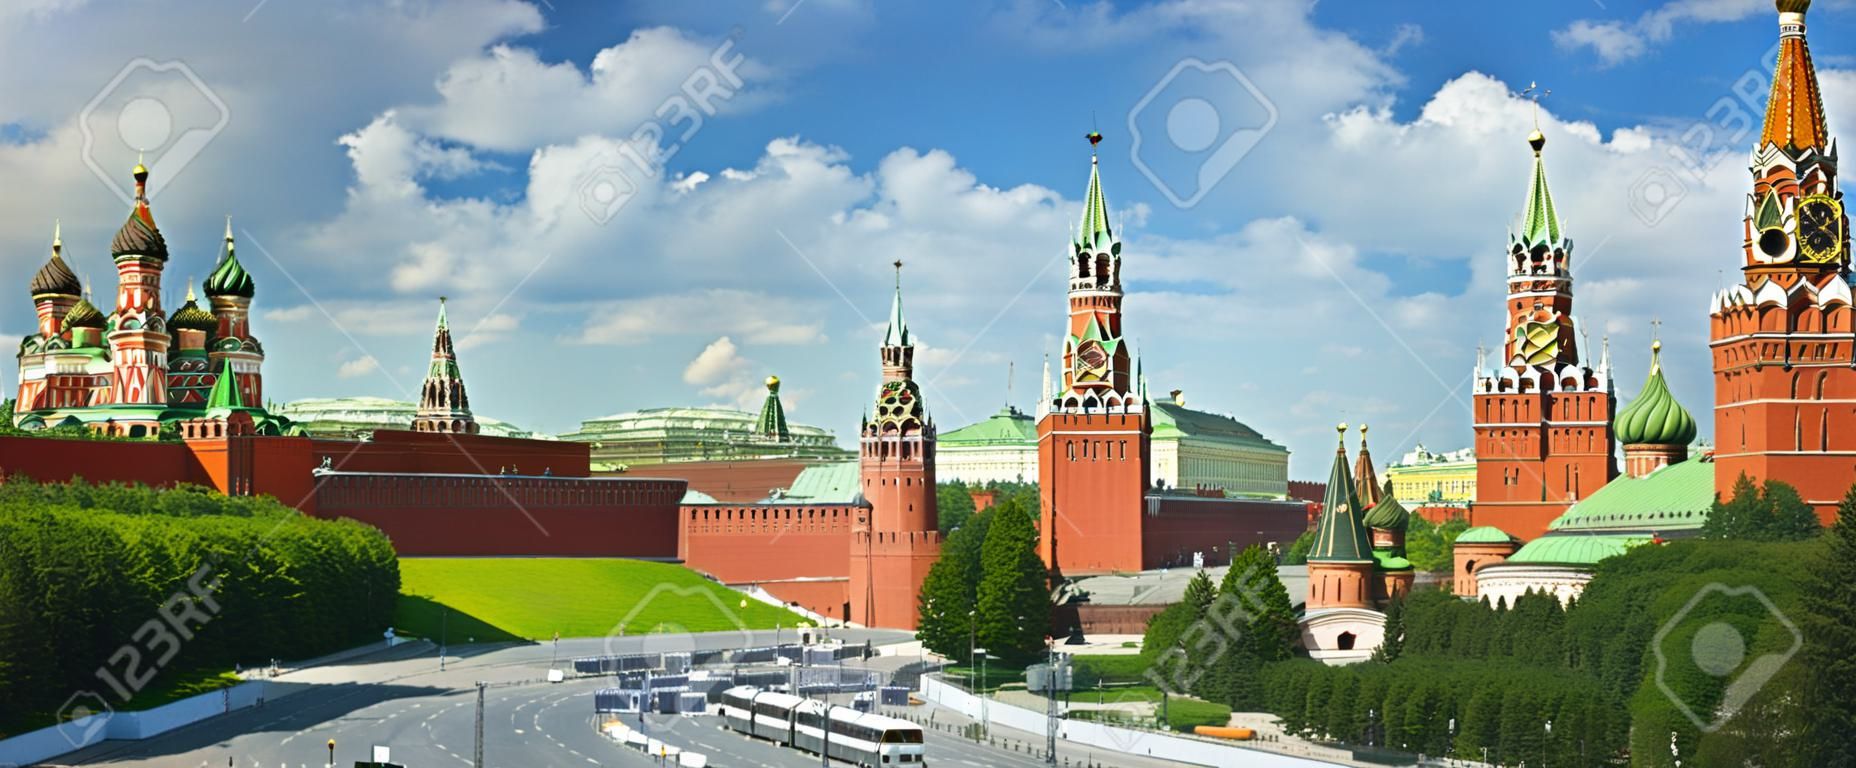 Panorámás kilátás Moszkva vörös térről, Kreml tornyokról, csillagokról és Kuranti óra, Szent Bazil székesegyház. Panoráma szálloda Oroszországból. Moszkva üdülési túrák híres látnivalók